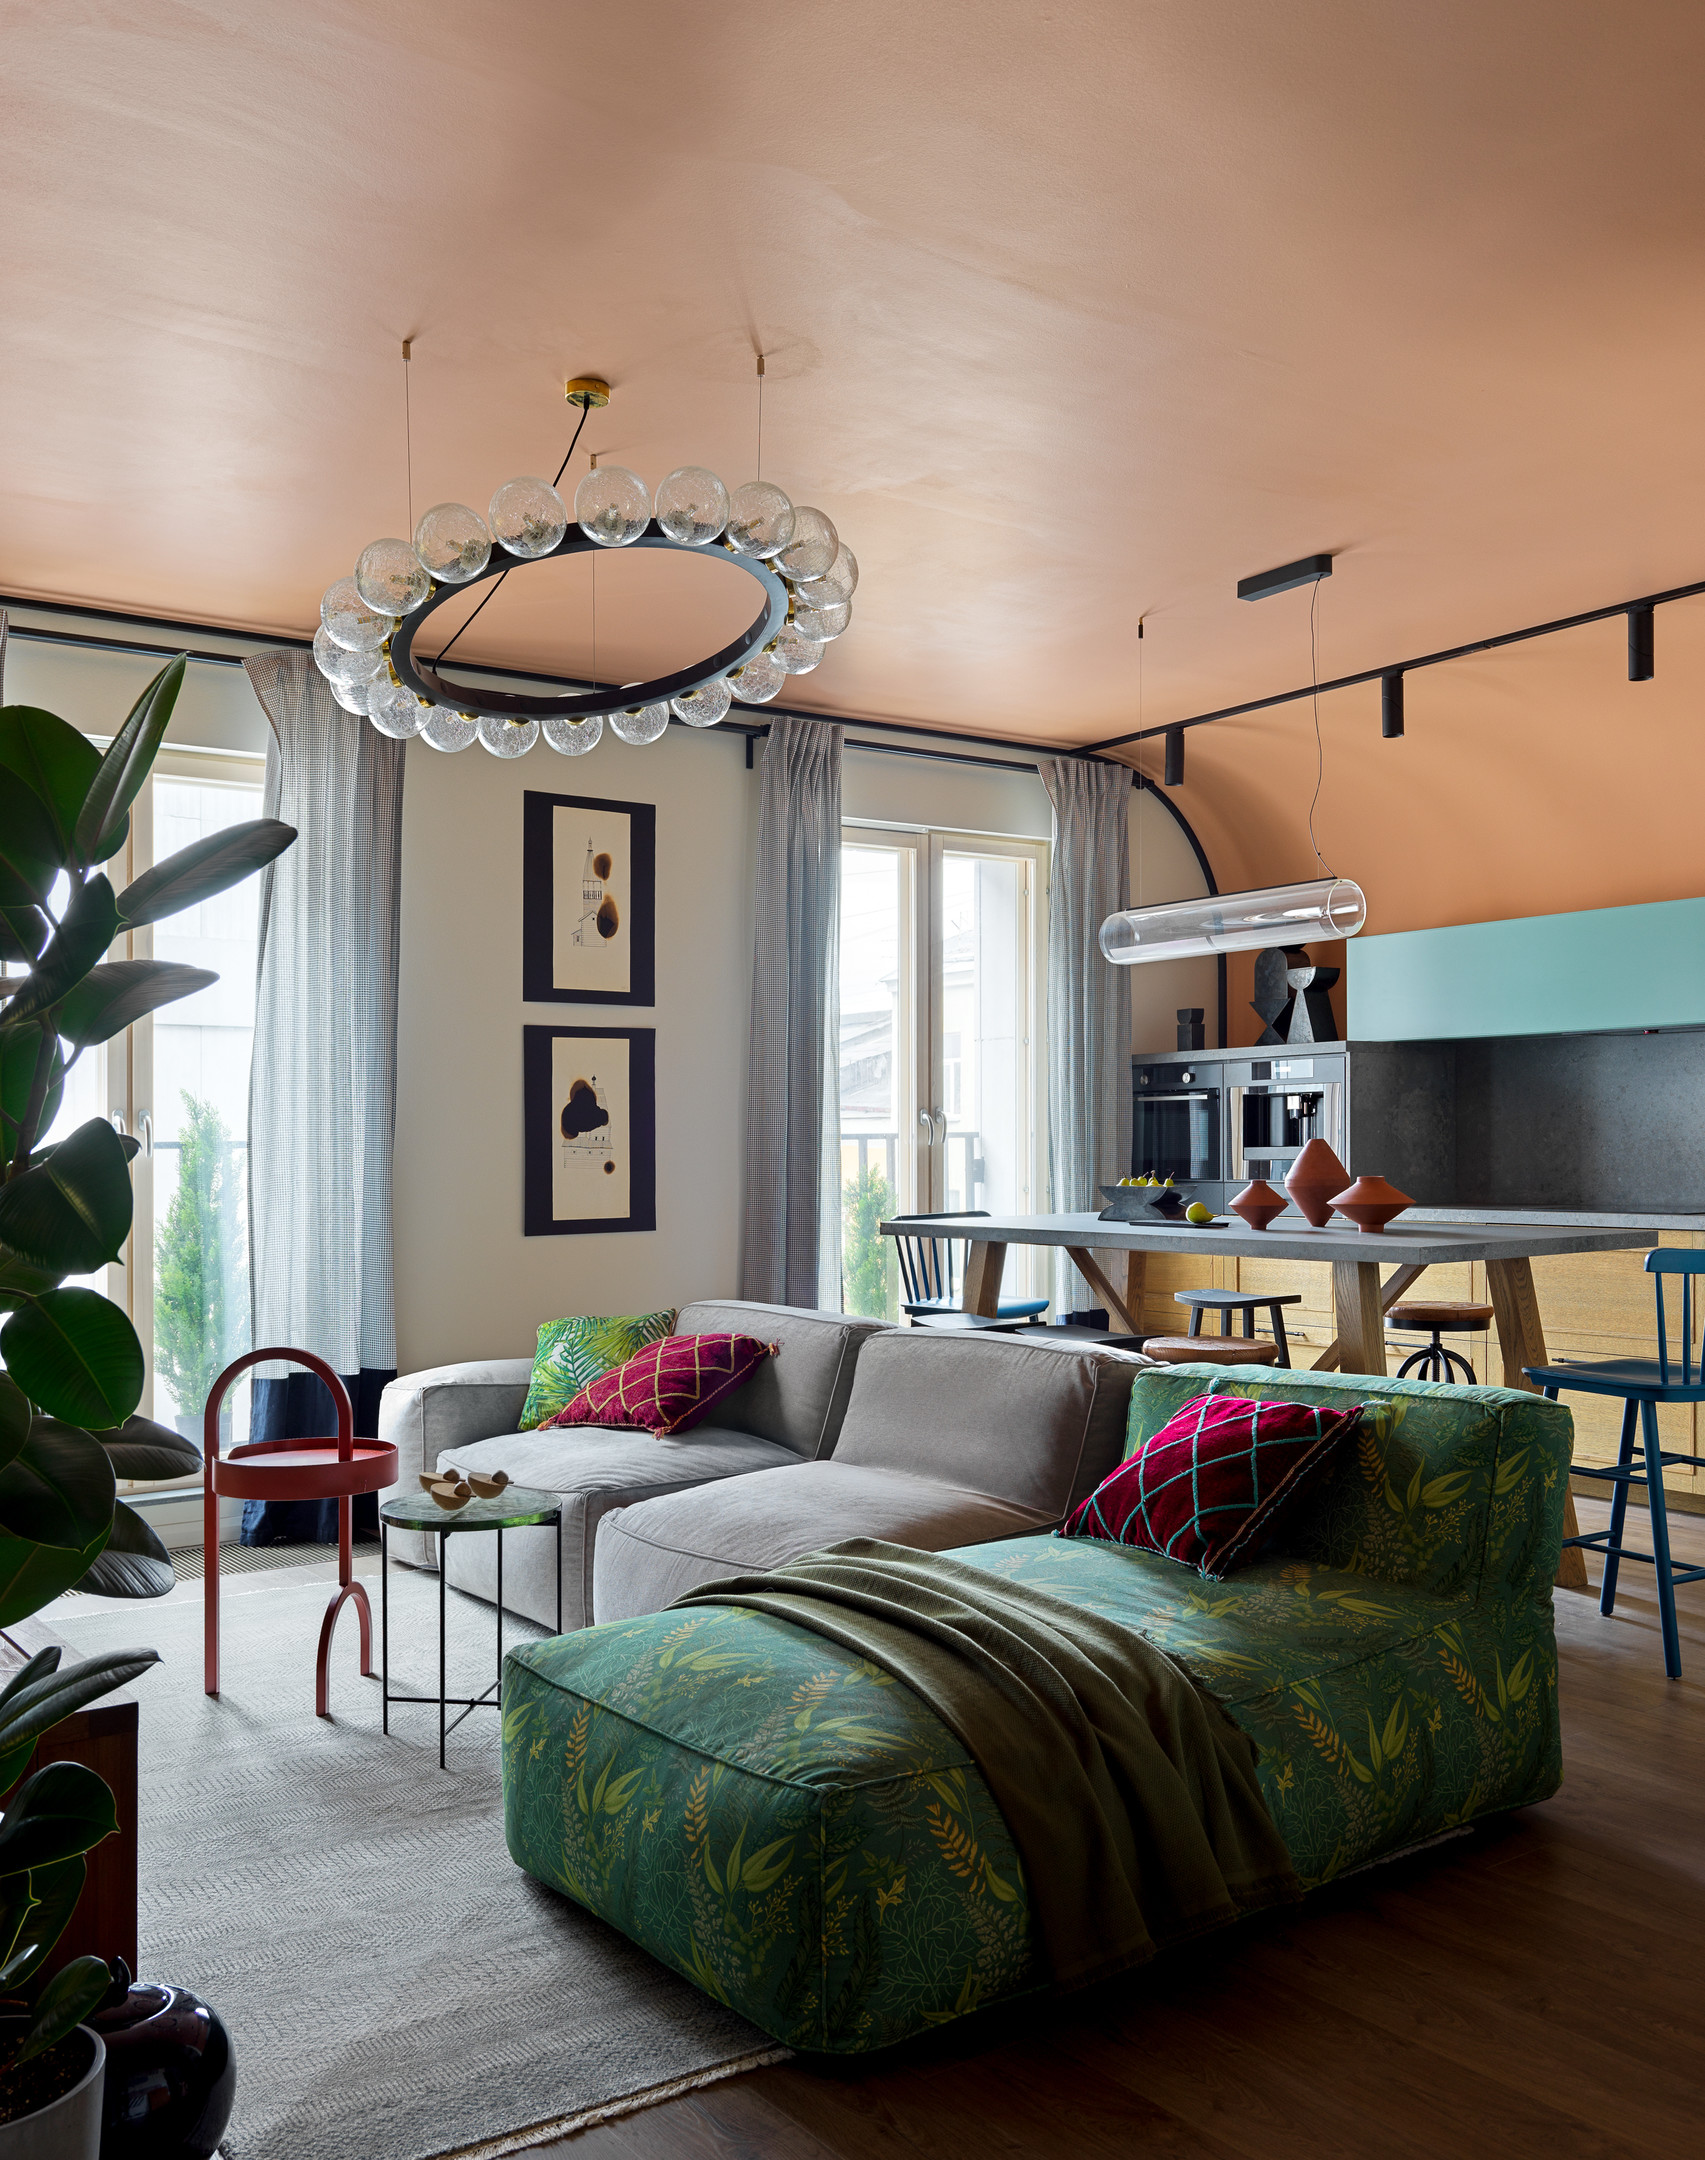 Phòng khách mở giúp không gian thêm rộng thoáng, ghế sofa không khung mềm mại, một góc thiết kế như chiếc giường đơn với vải bọc họa tiết nhiệt đới tươi xanh.